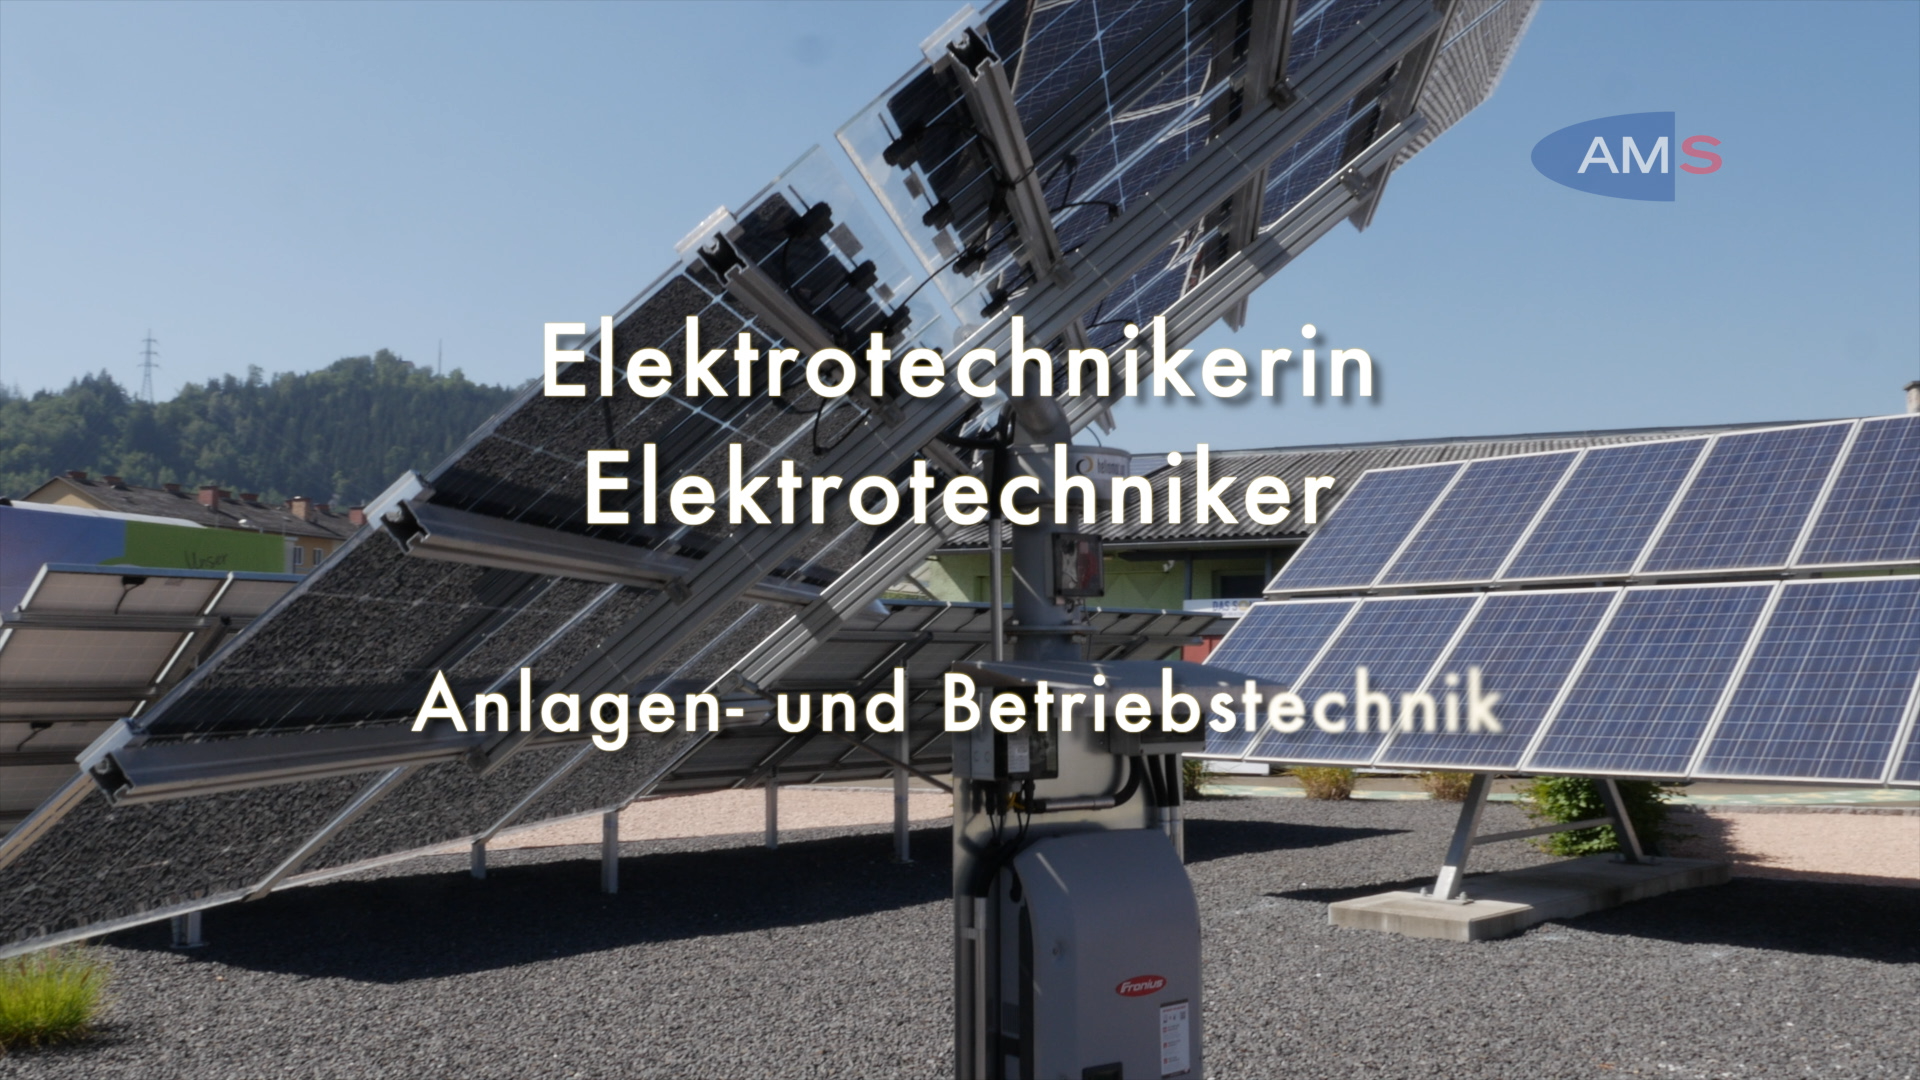 ElektrotechnikerIn - Hauptmodul Anlagen- und Betriebstechnik